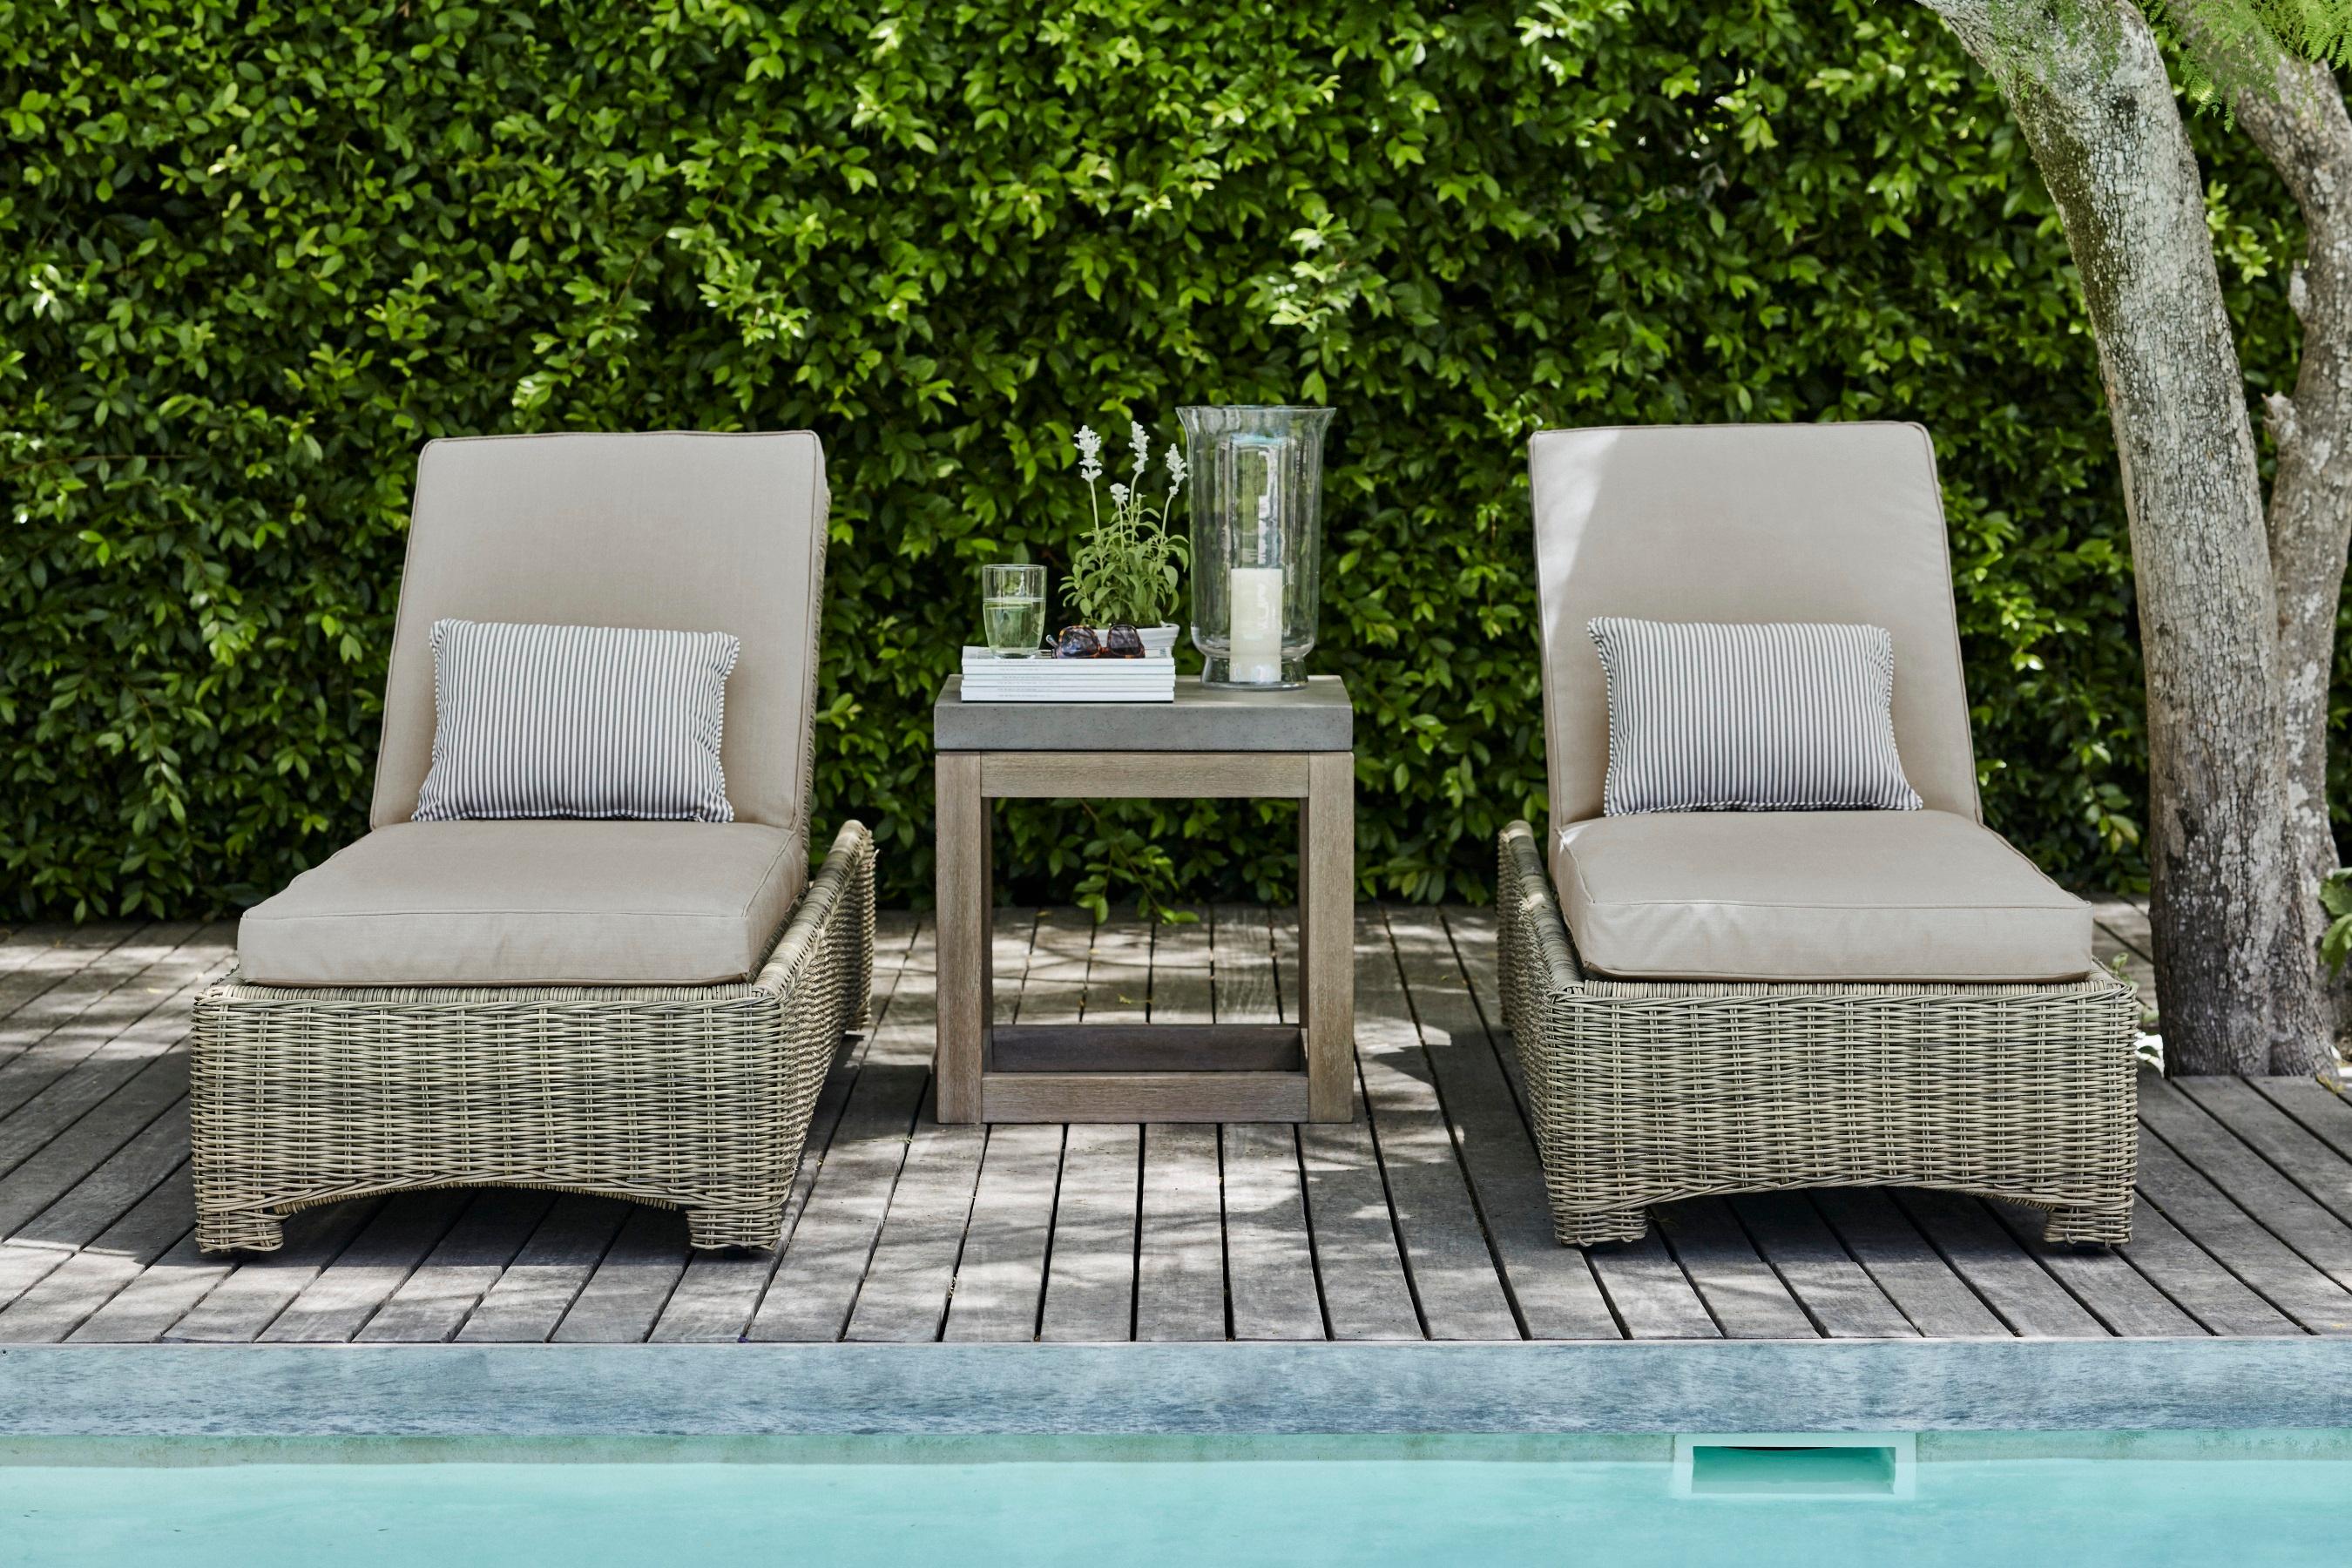 Murano Liegestühle #pool #beistelltisch #terrasse #kissen #gartenliege #landhausstil #gartenmöbel #lounge #sonnenliege #windlicht ©Neptune Europe LTD